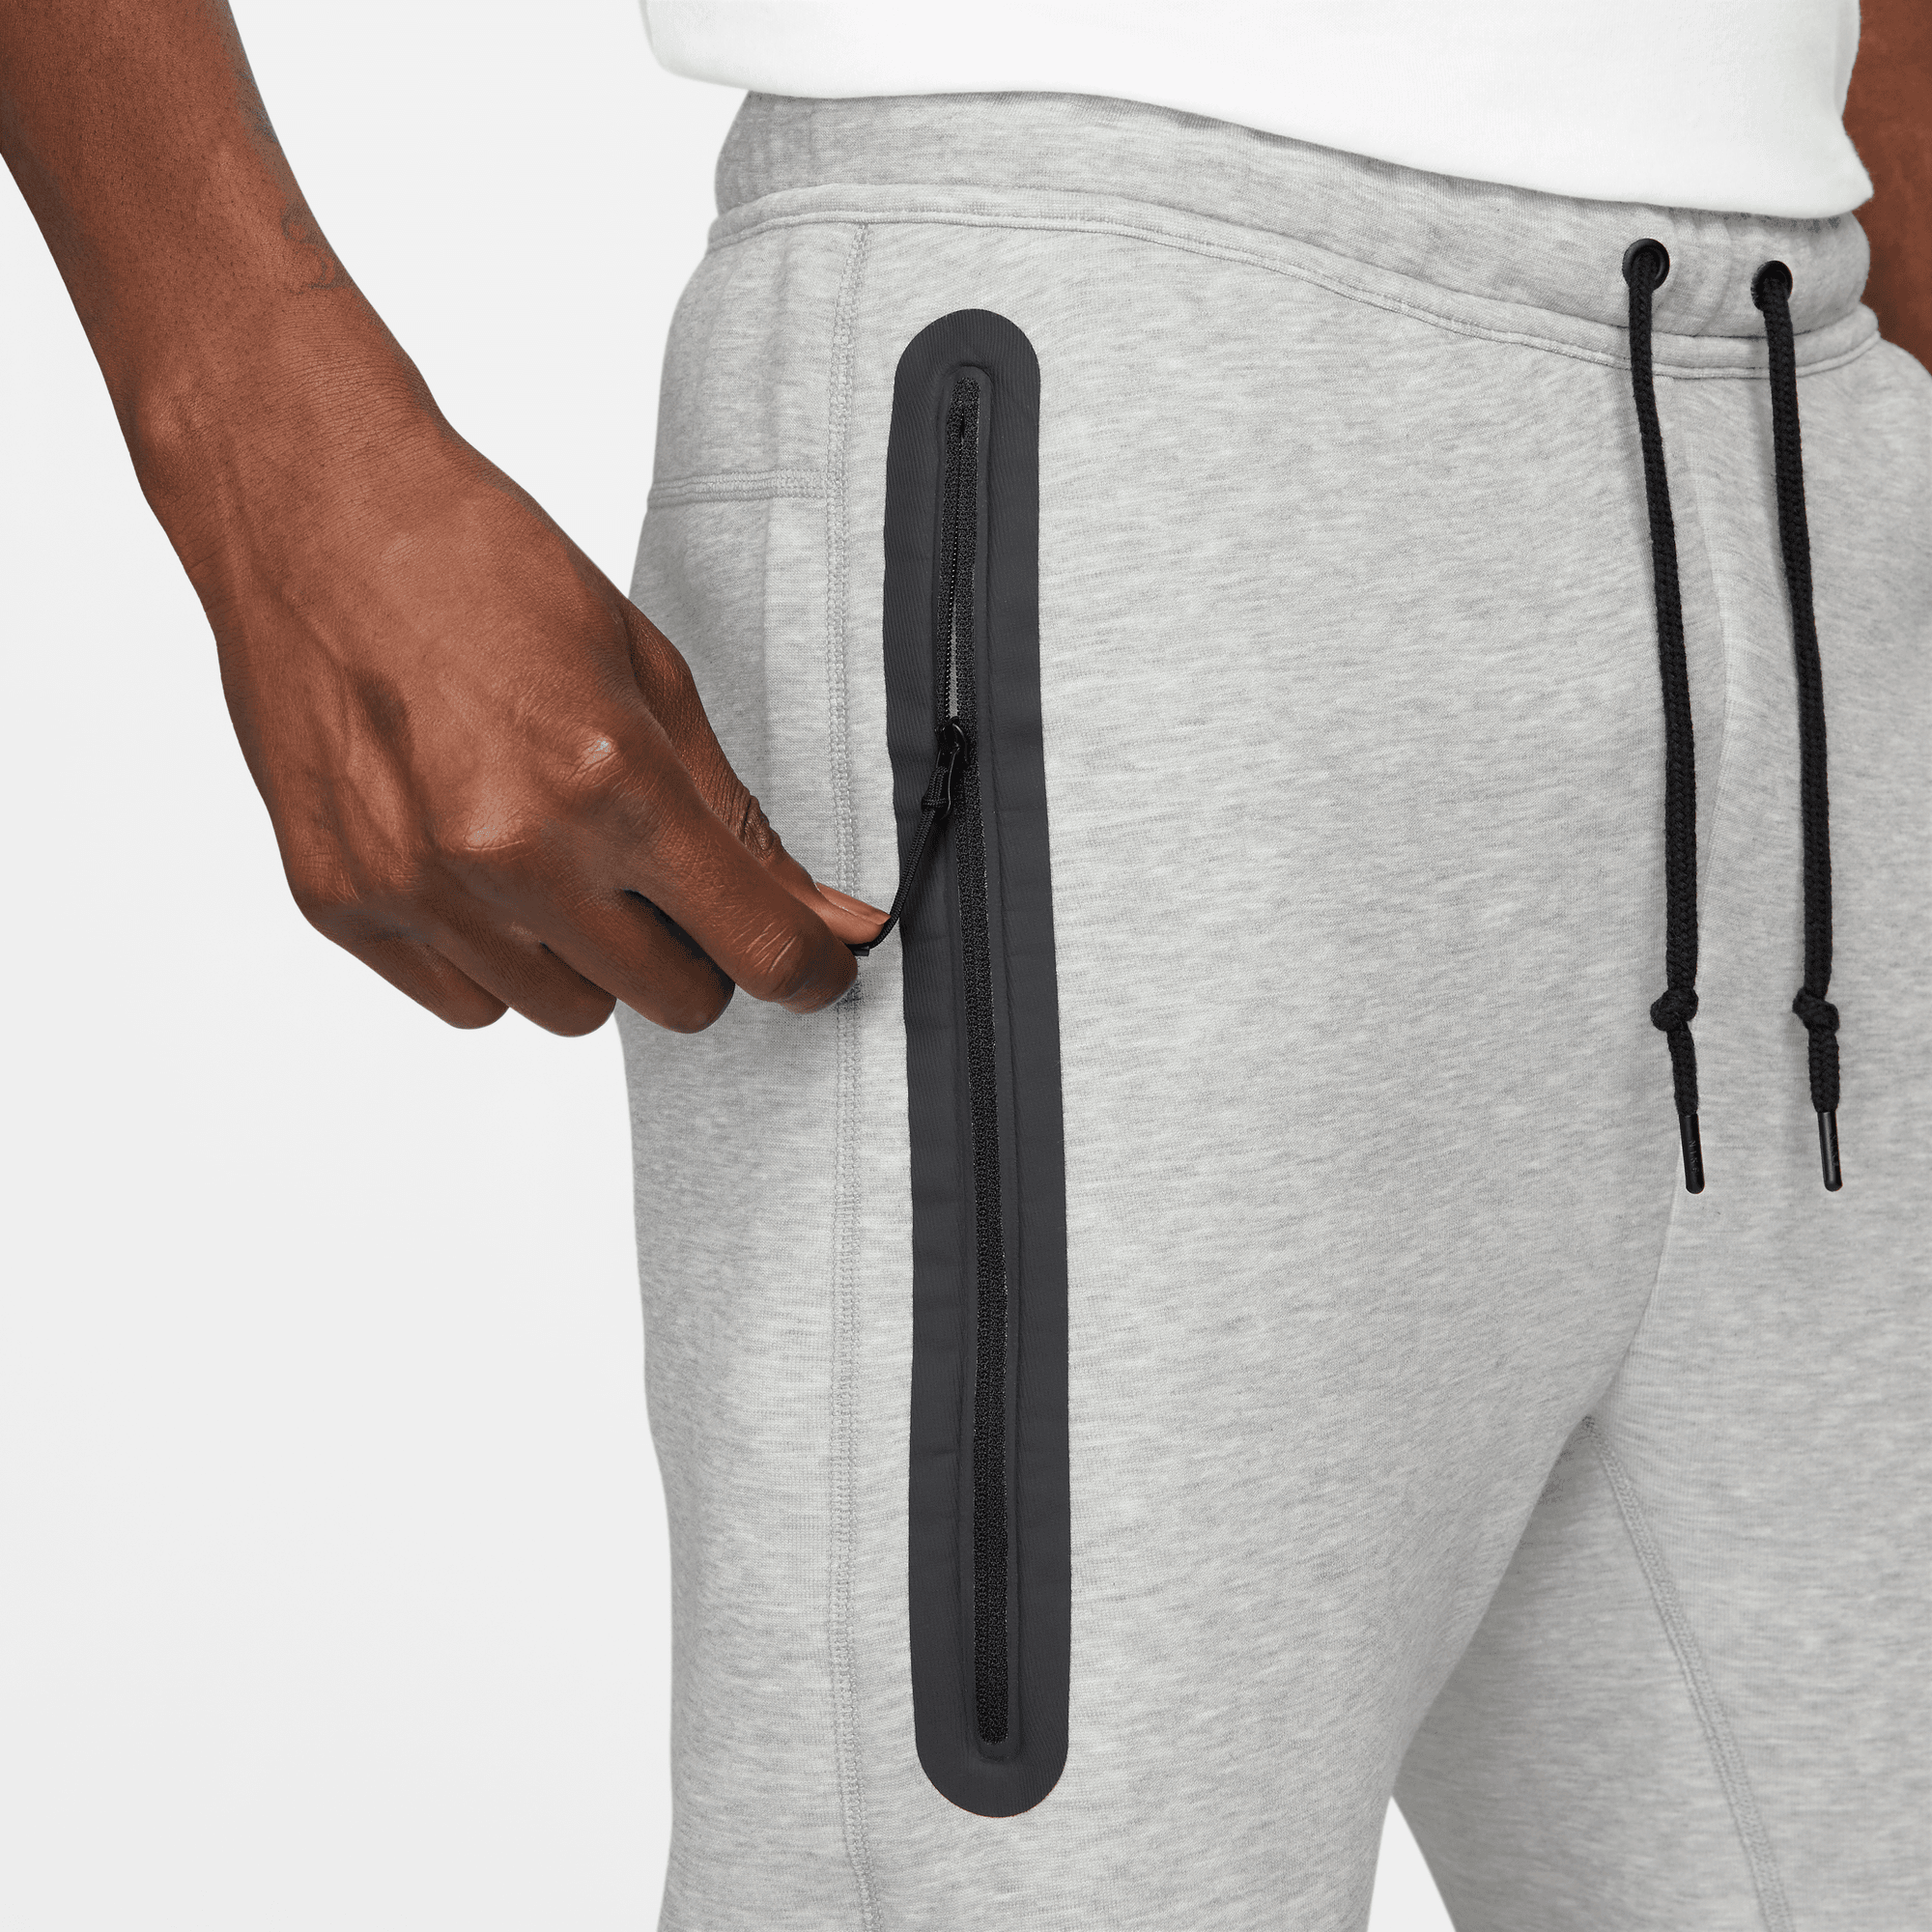 Nike Sportswear Tech Fleece Men's Grey Joggers